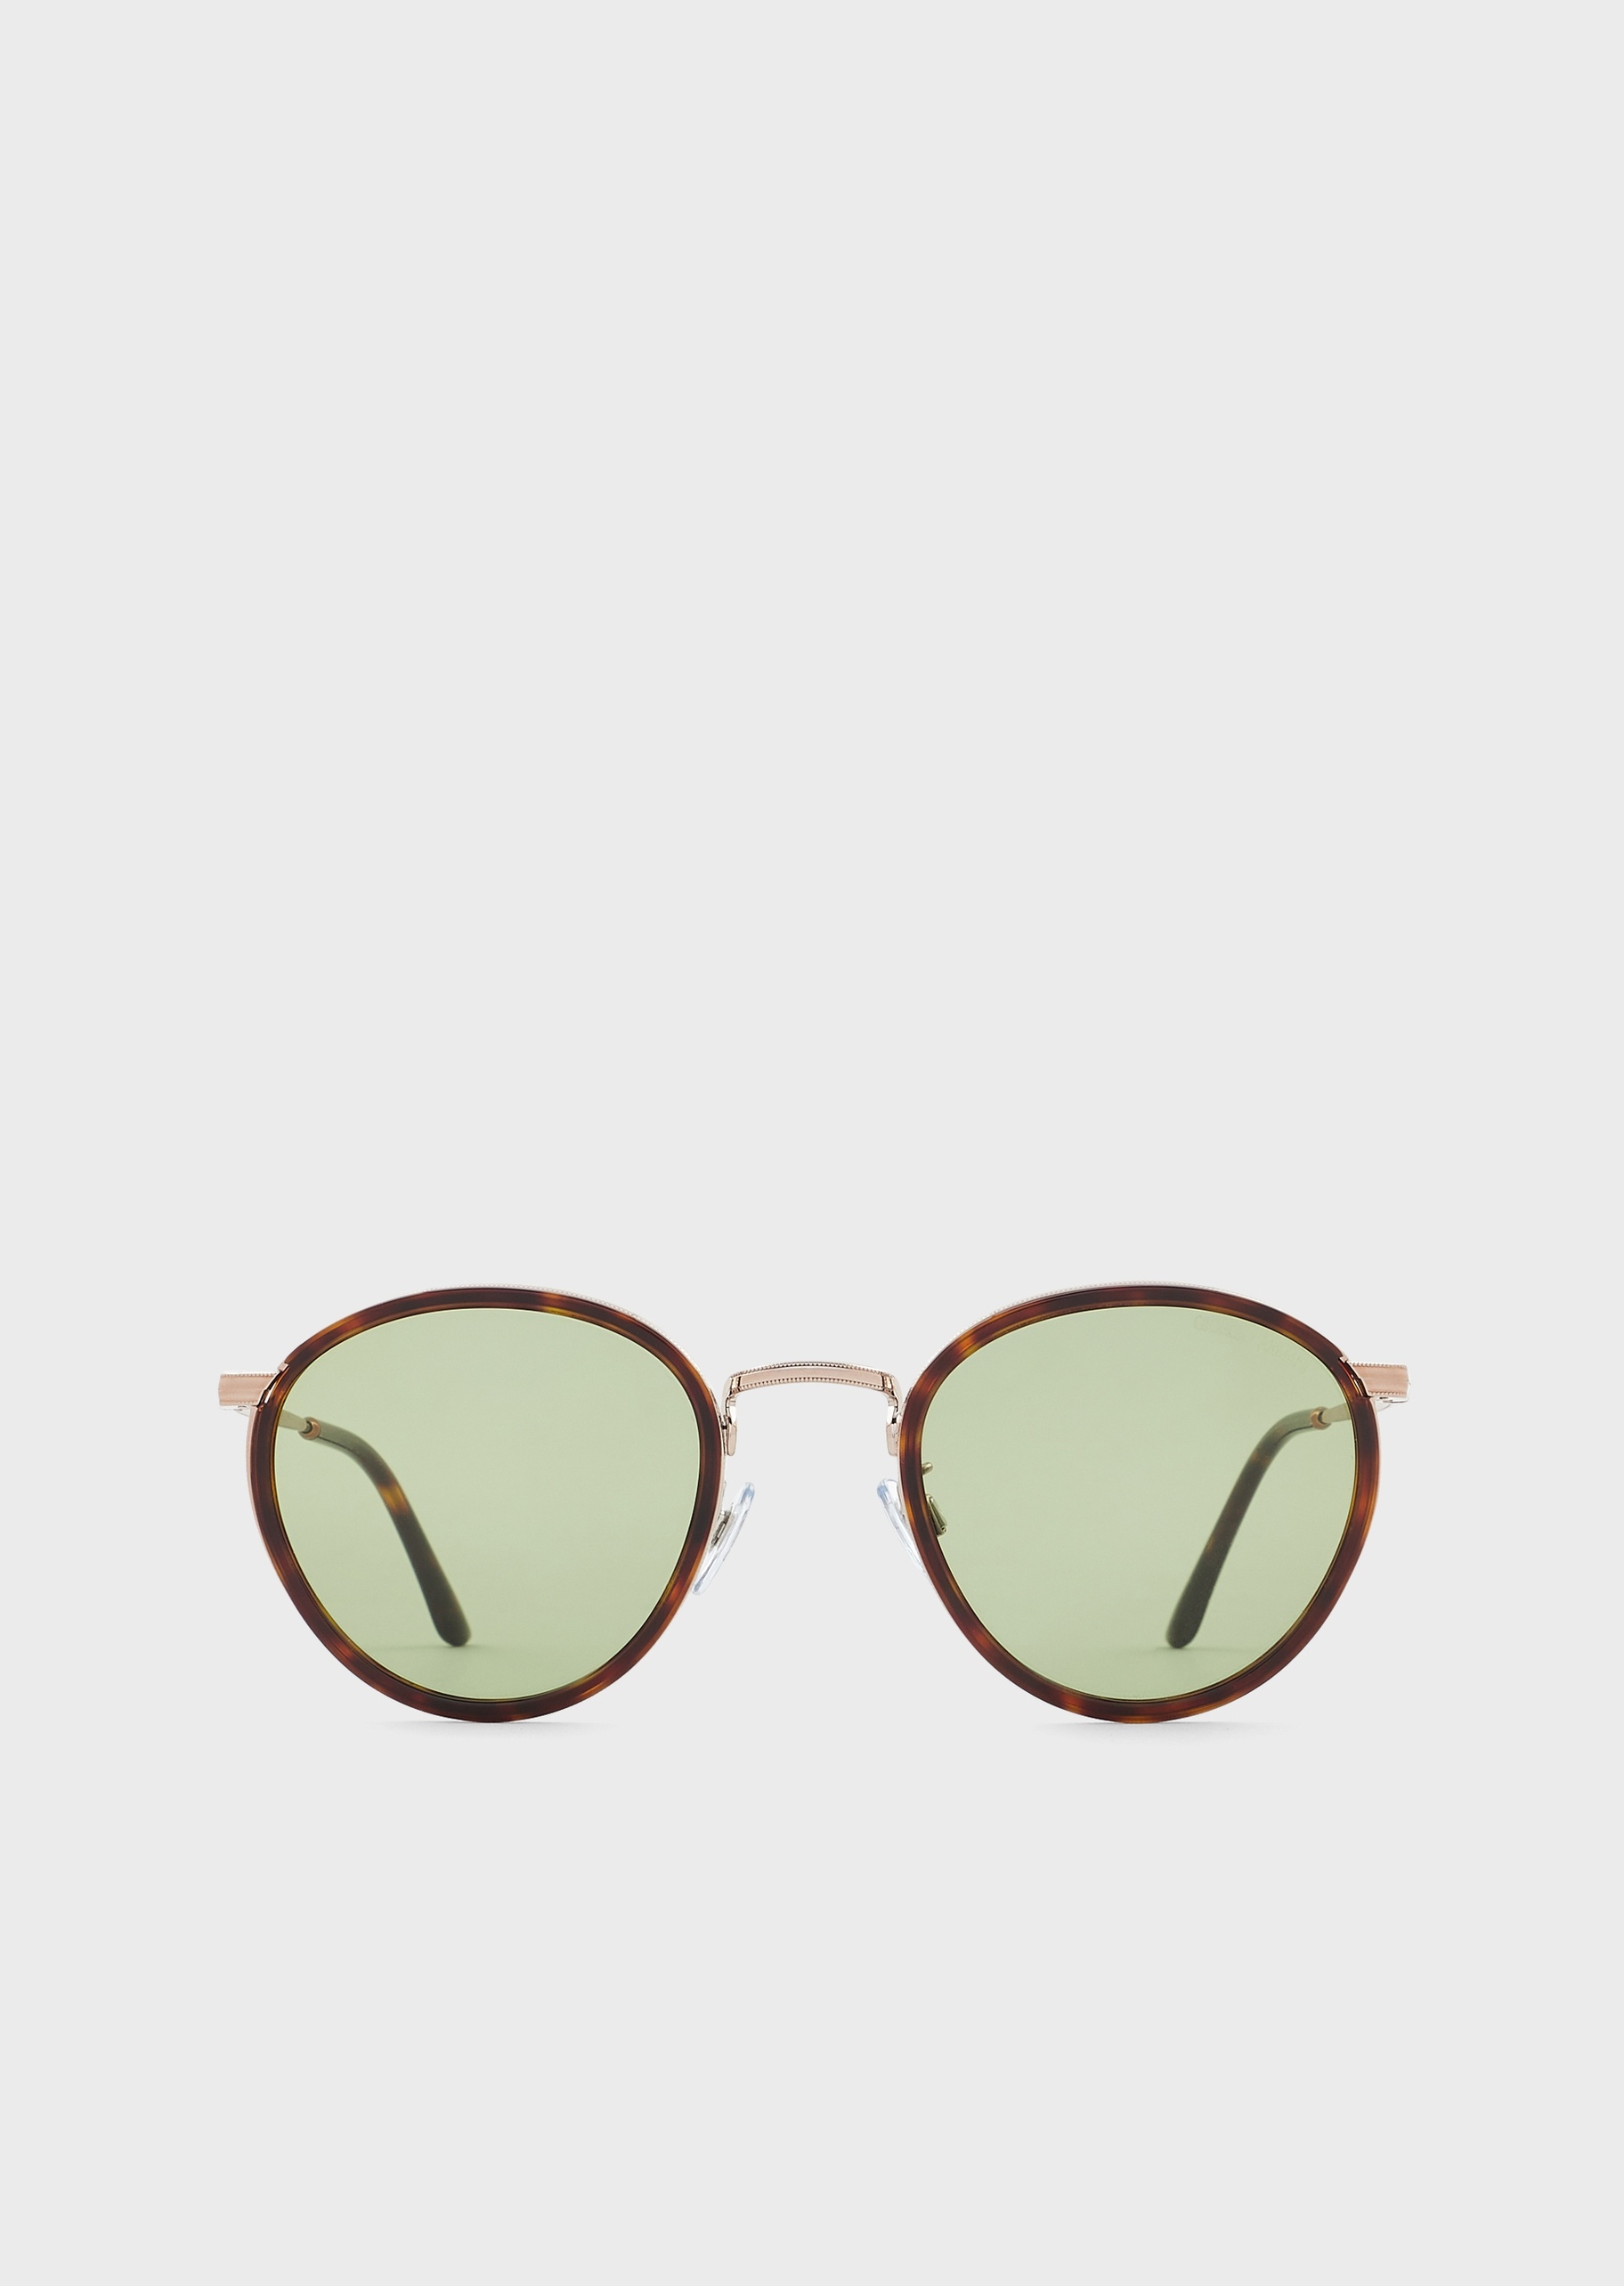 Giorgio Armani 个性新潮百搭太阳眼镜